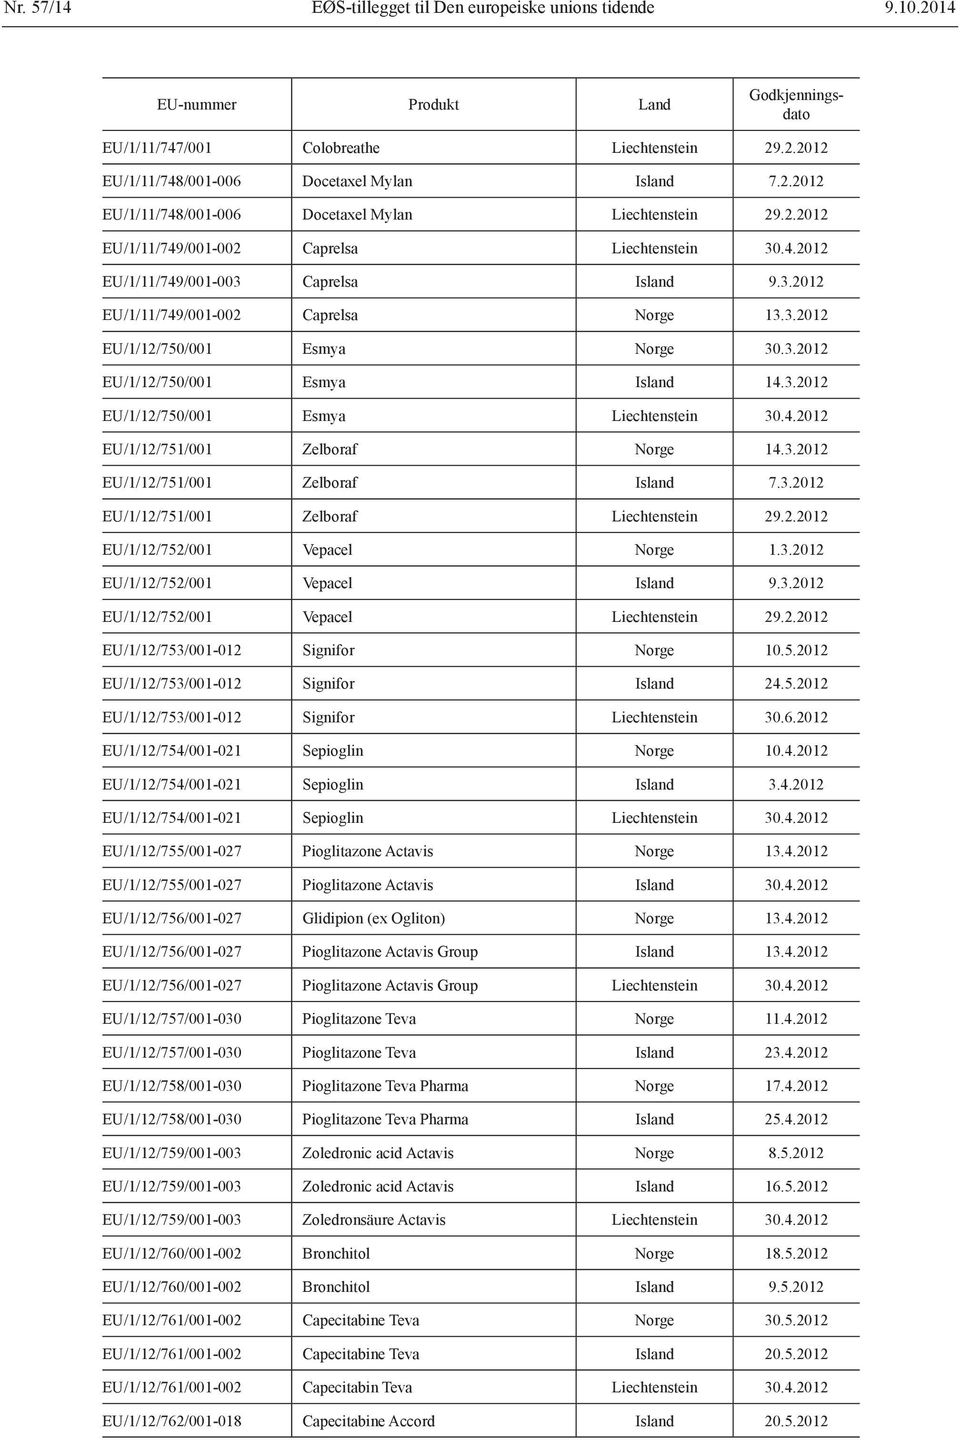 3.2012 EU/1/12/750/001 Esmya Liechtenstein 30.4.2012 EU/1/12/751/001 Zelboraf Norge 14.3.2012 EU/1/12/751/001 Zelboraf Island 7.3.2012 EU/1/12/751/001 Zelboraf Liechtenstein 29.2.2012 EU/1/12/752/001 Vepacel Norge 1.